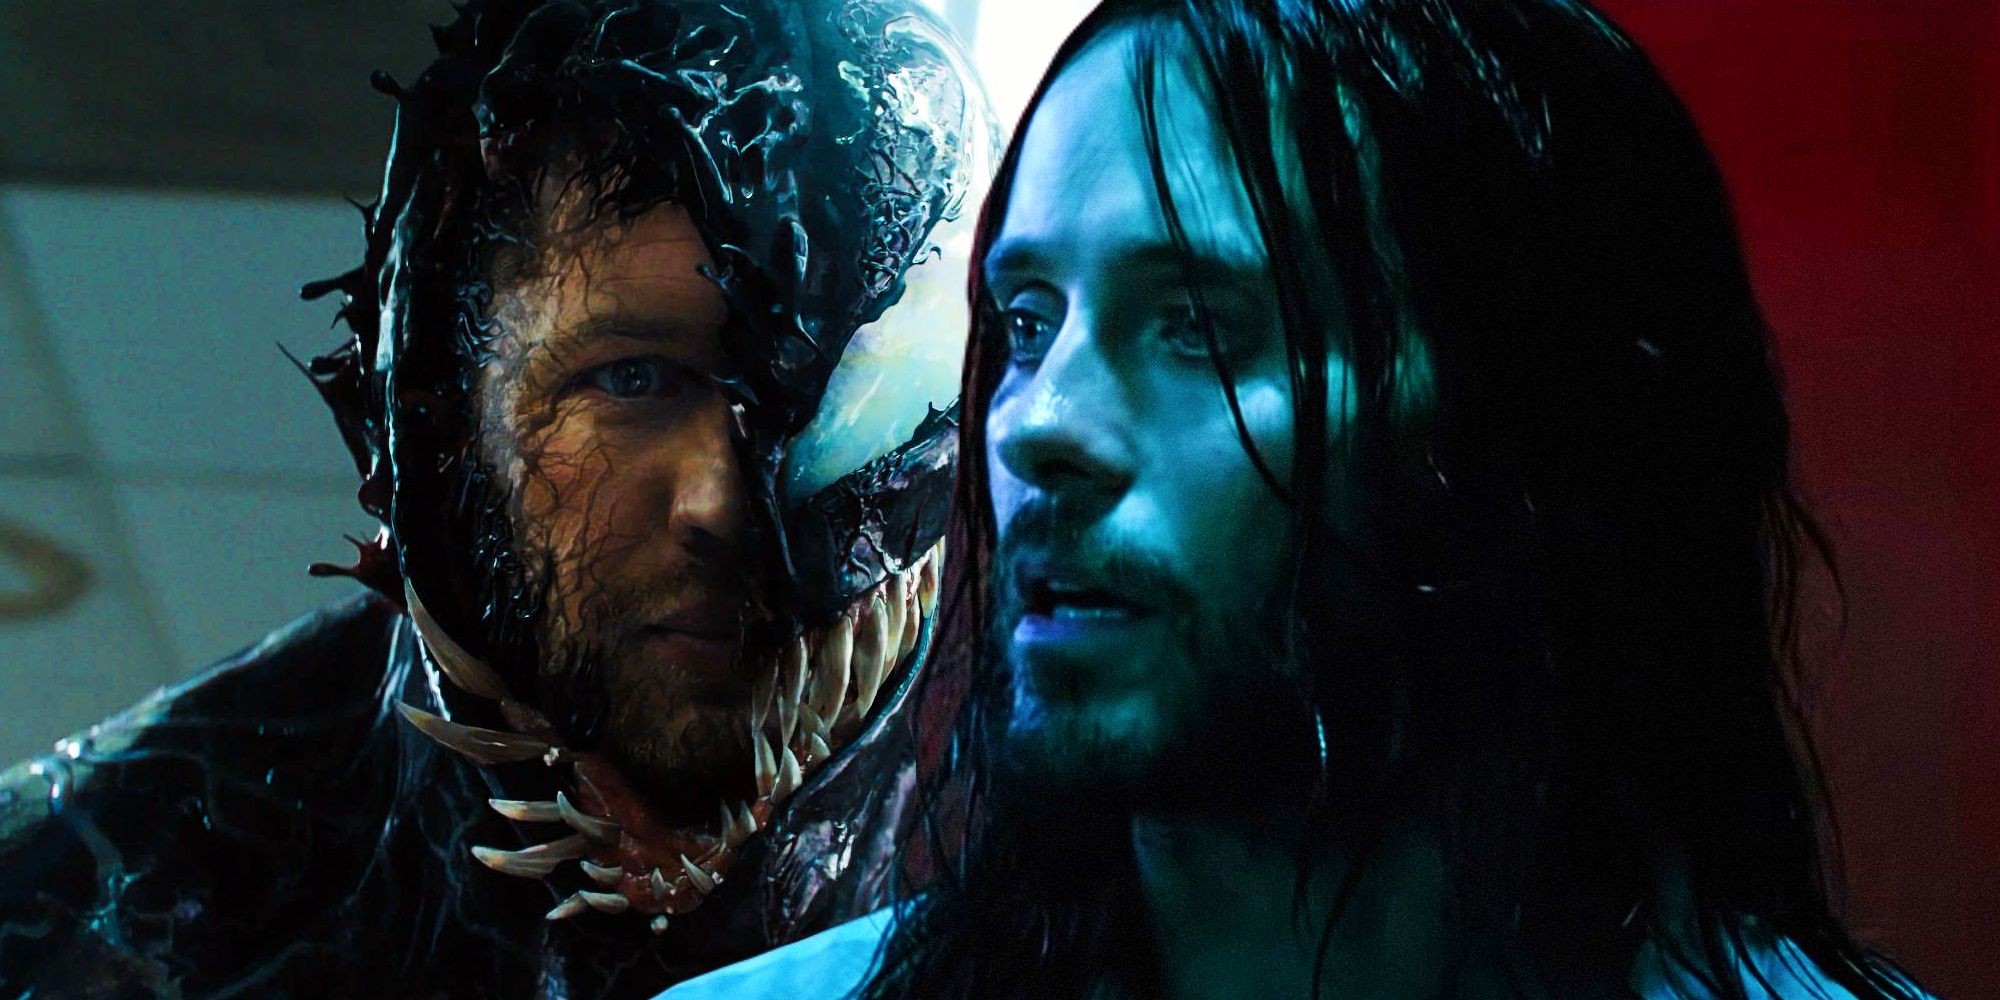 Tom Hardy as Venom and Jared Leto as Morbius